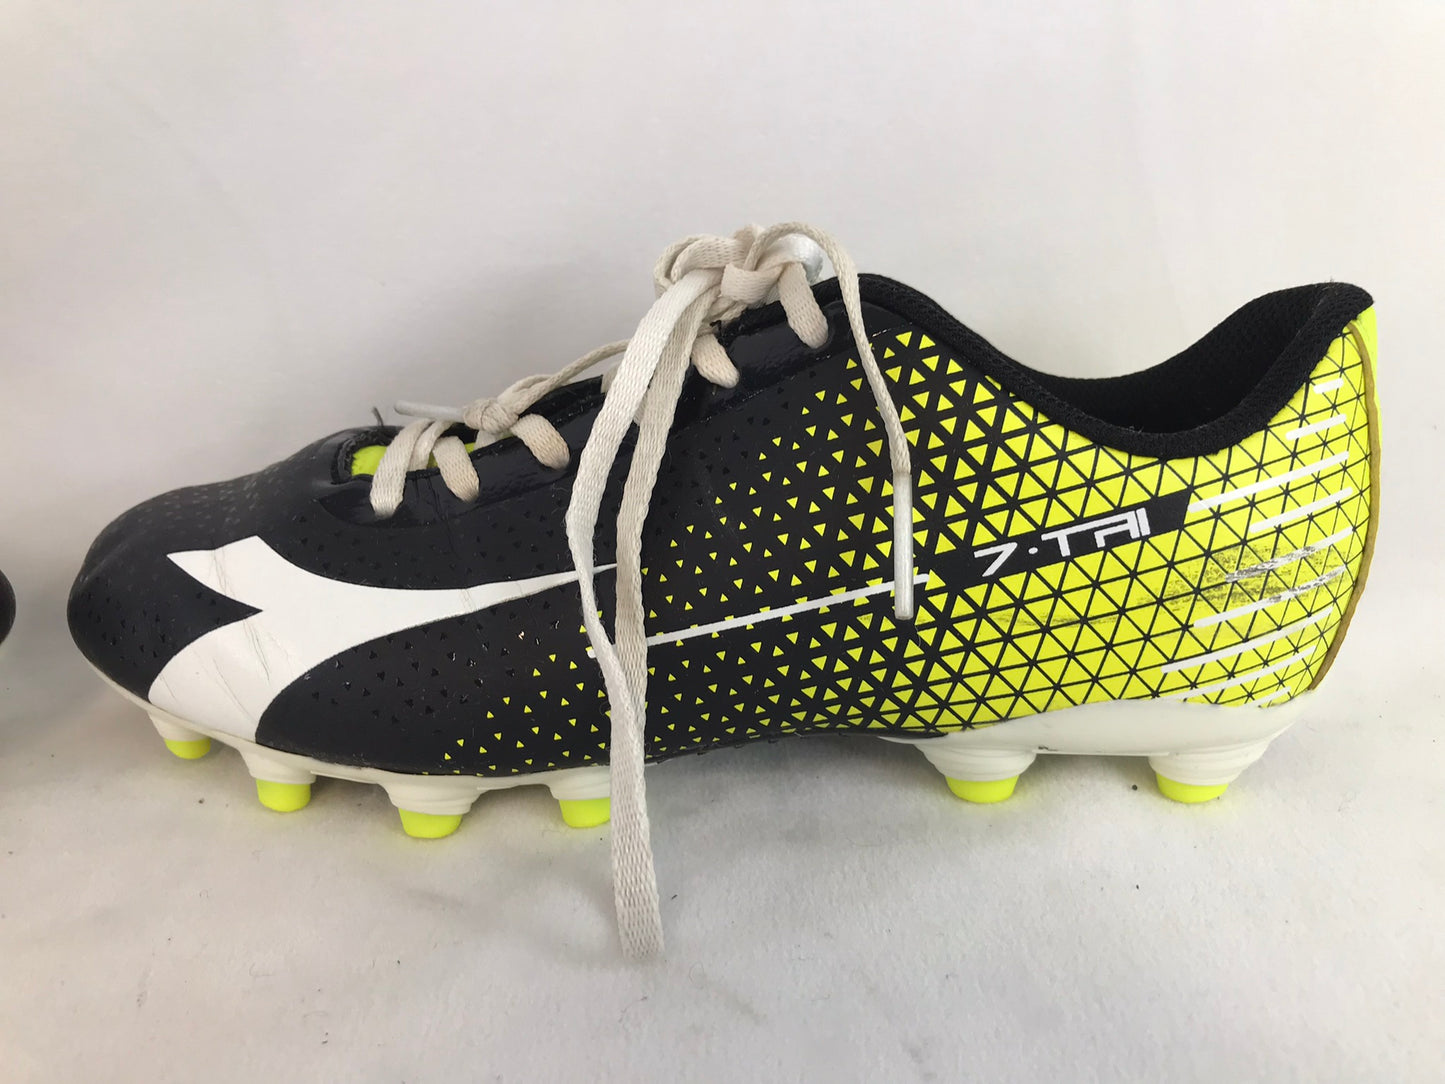 Soccer Shoes Cleats Men's Size 7.5 Diadora Black Lime White Excellent